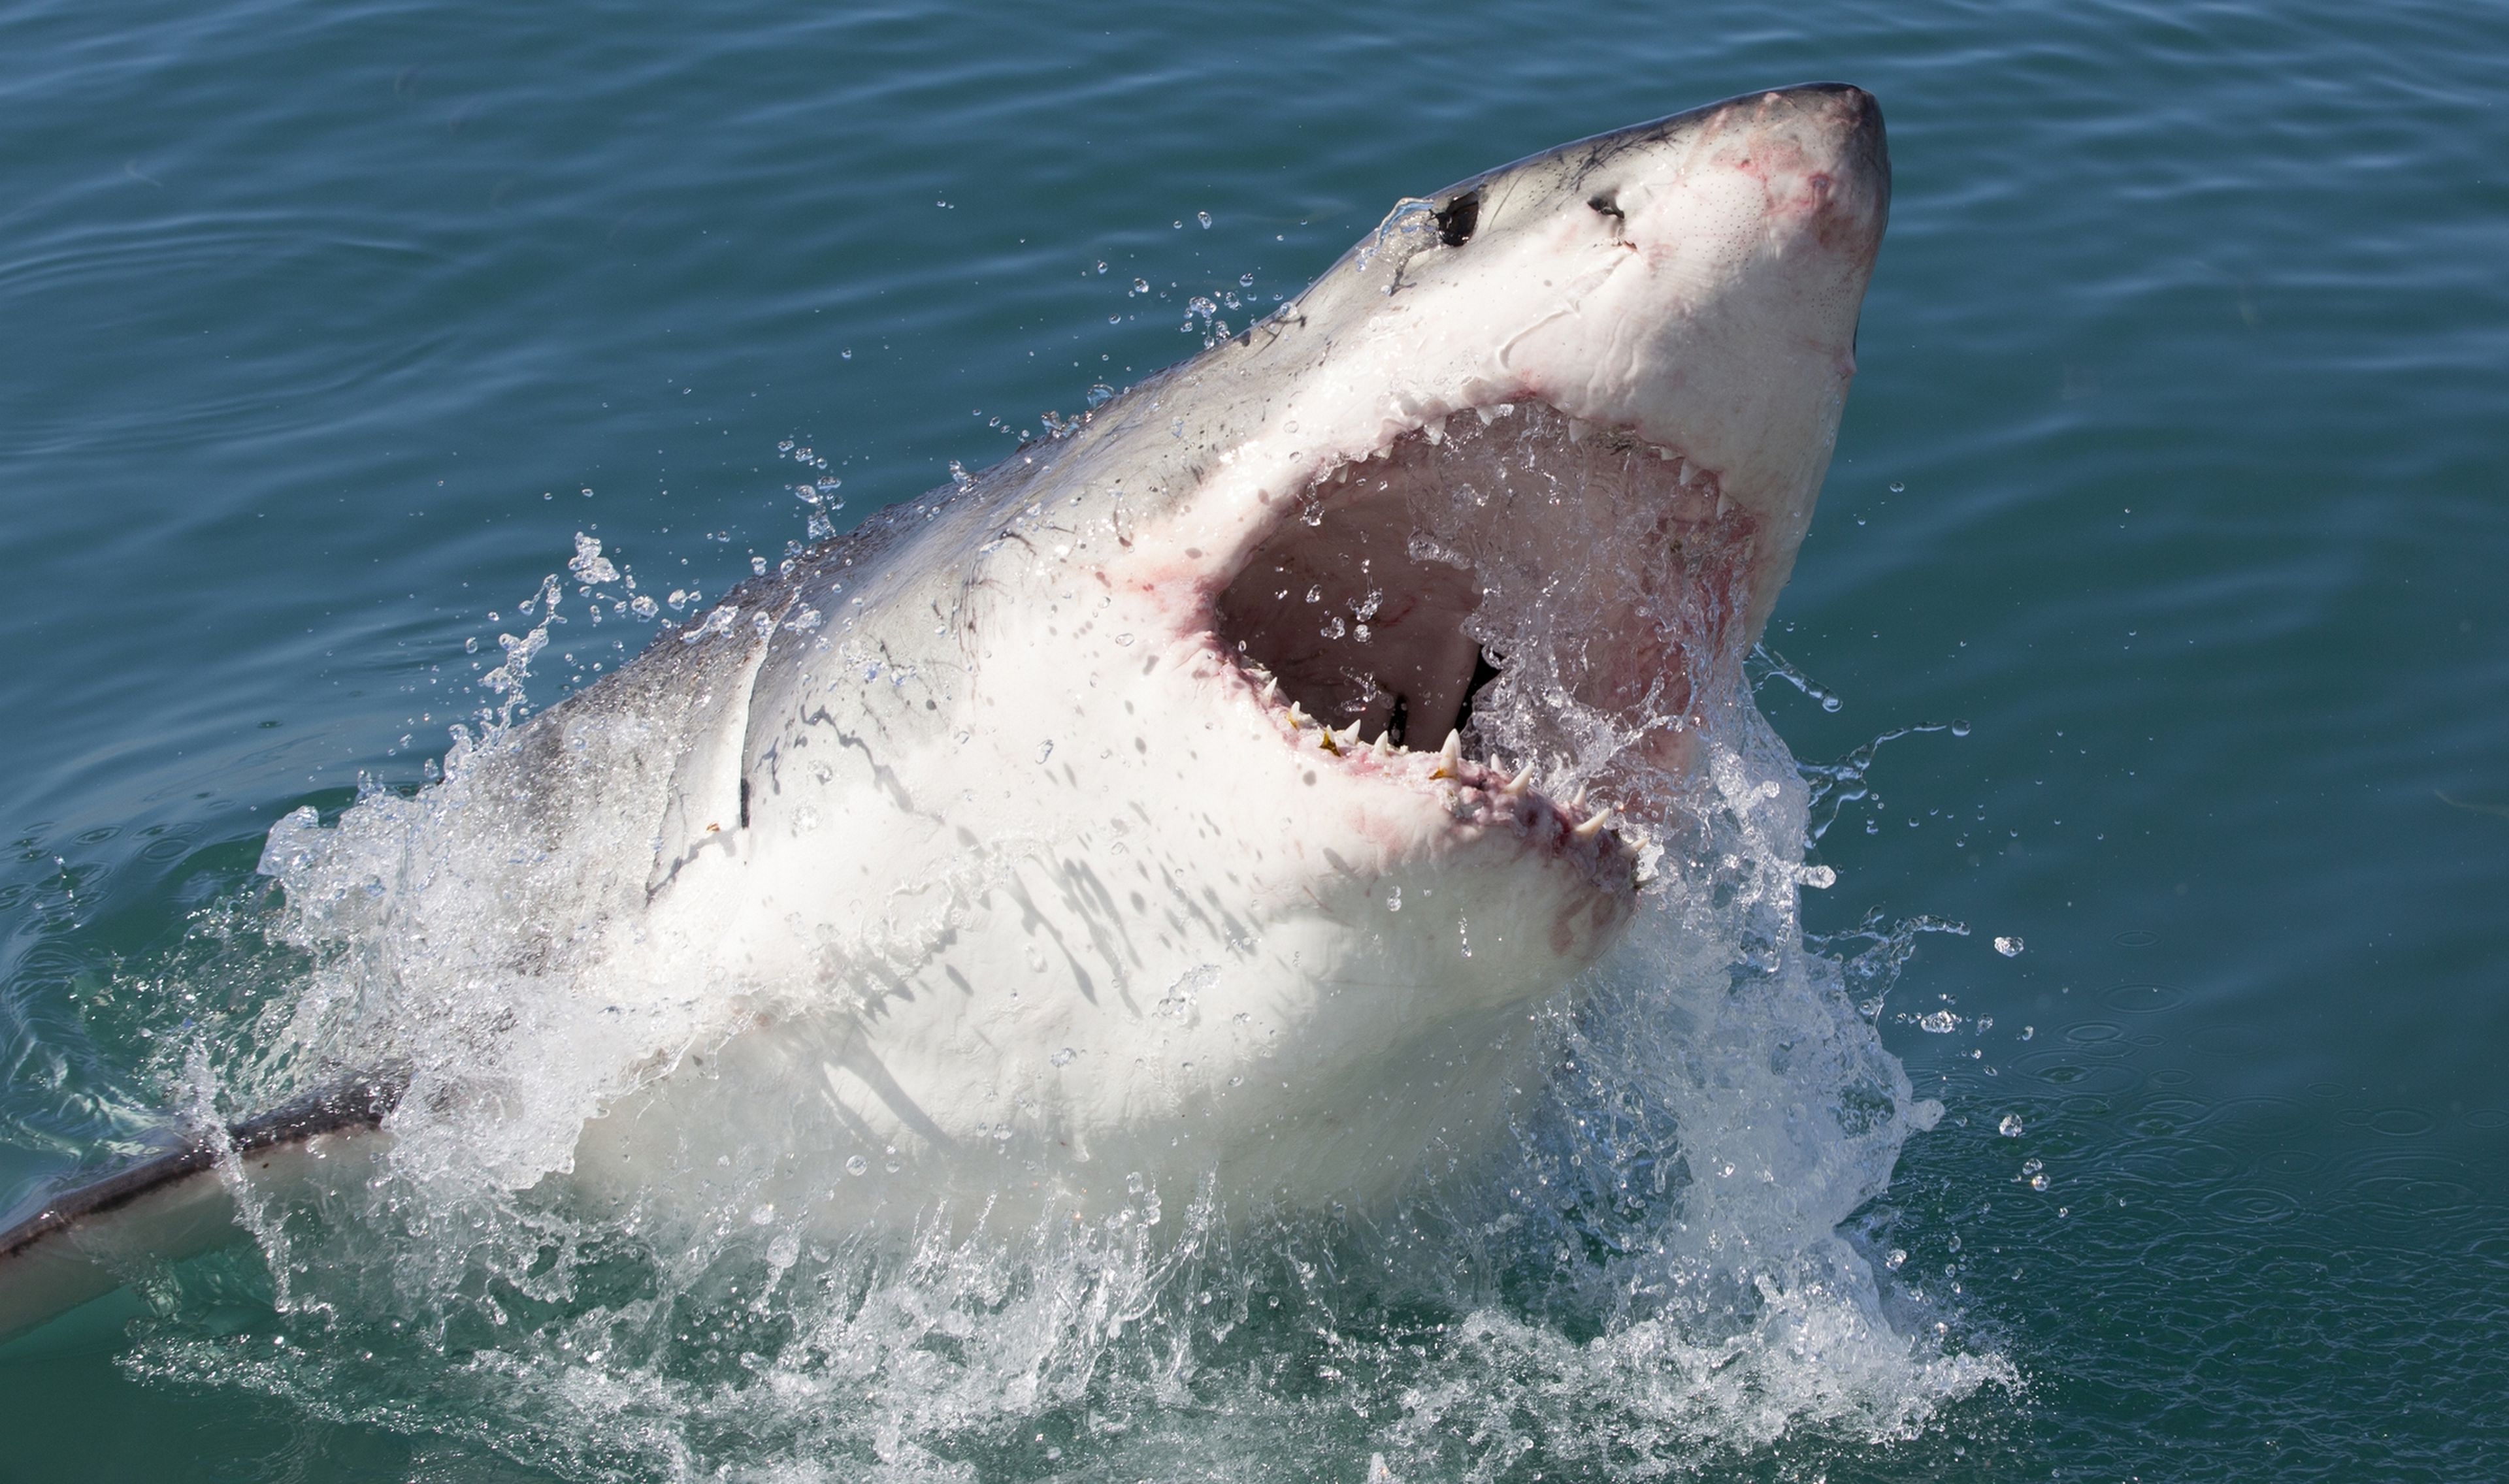 Un tiburón se traga una cámara de 360 grados y nos ofrece una visión única de su día a día, desde sus mandíbulas